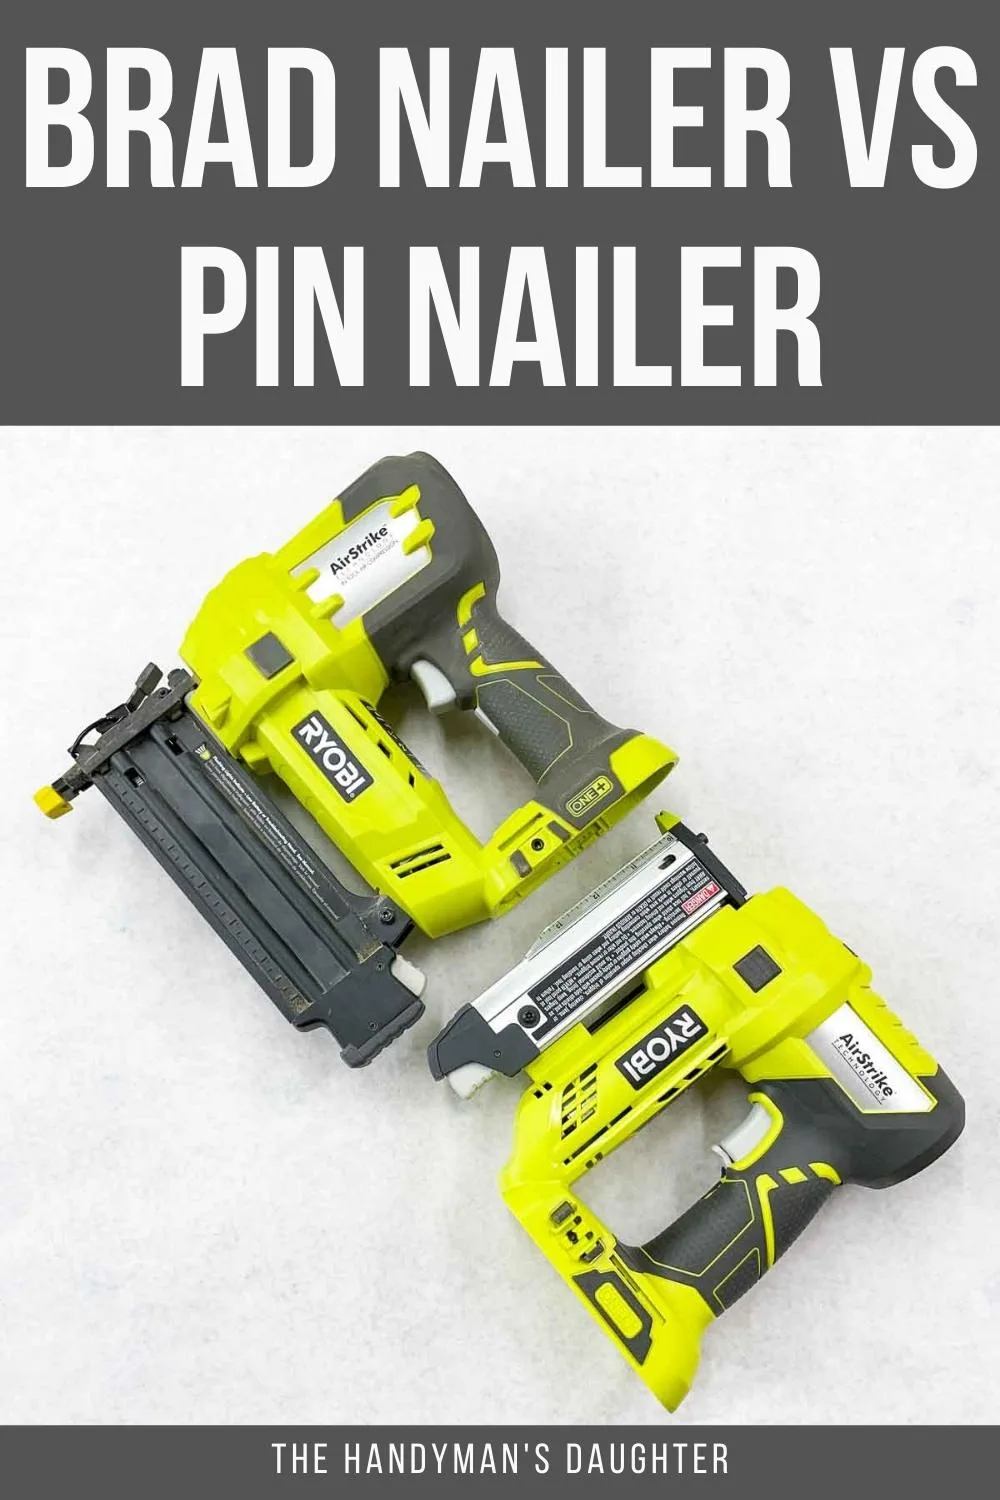 Brad Nailer vs Pin Nailer - Which Should I Choose? - The Handyman's Daughter